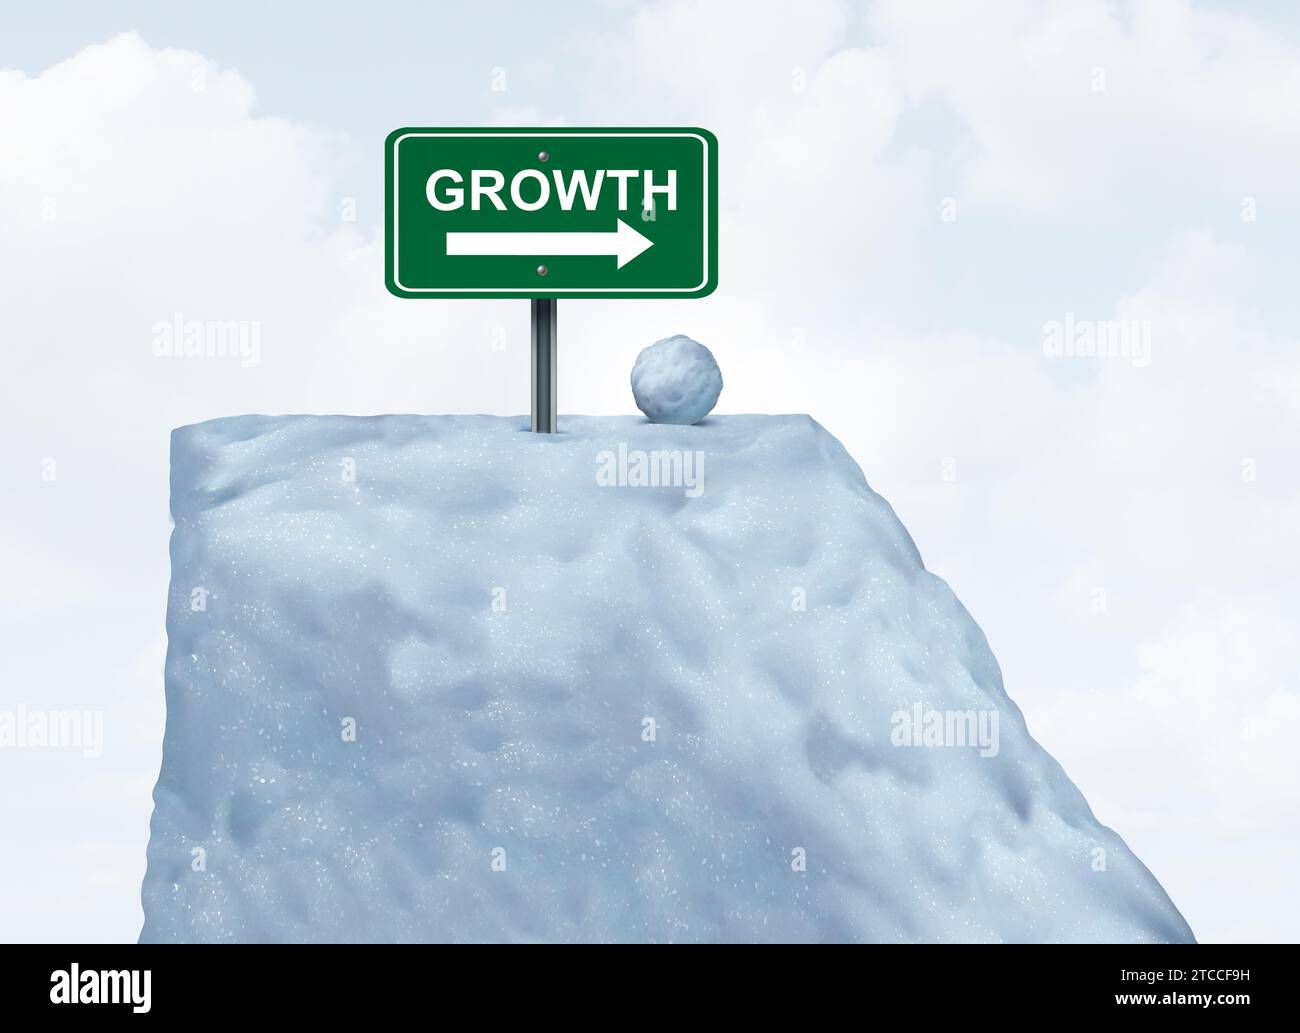 Unternehmensberatung und Wachstumspotenzial Snowball Principal als Erfolgsmetapher für das Wachstum eines Unternehmens Stockfoto